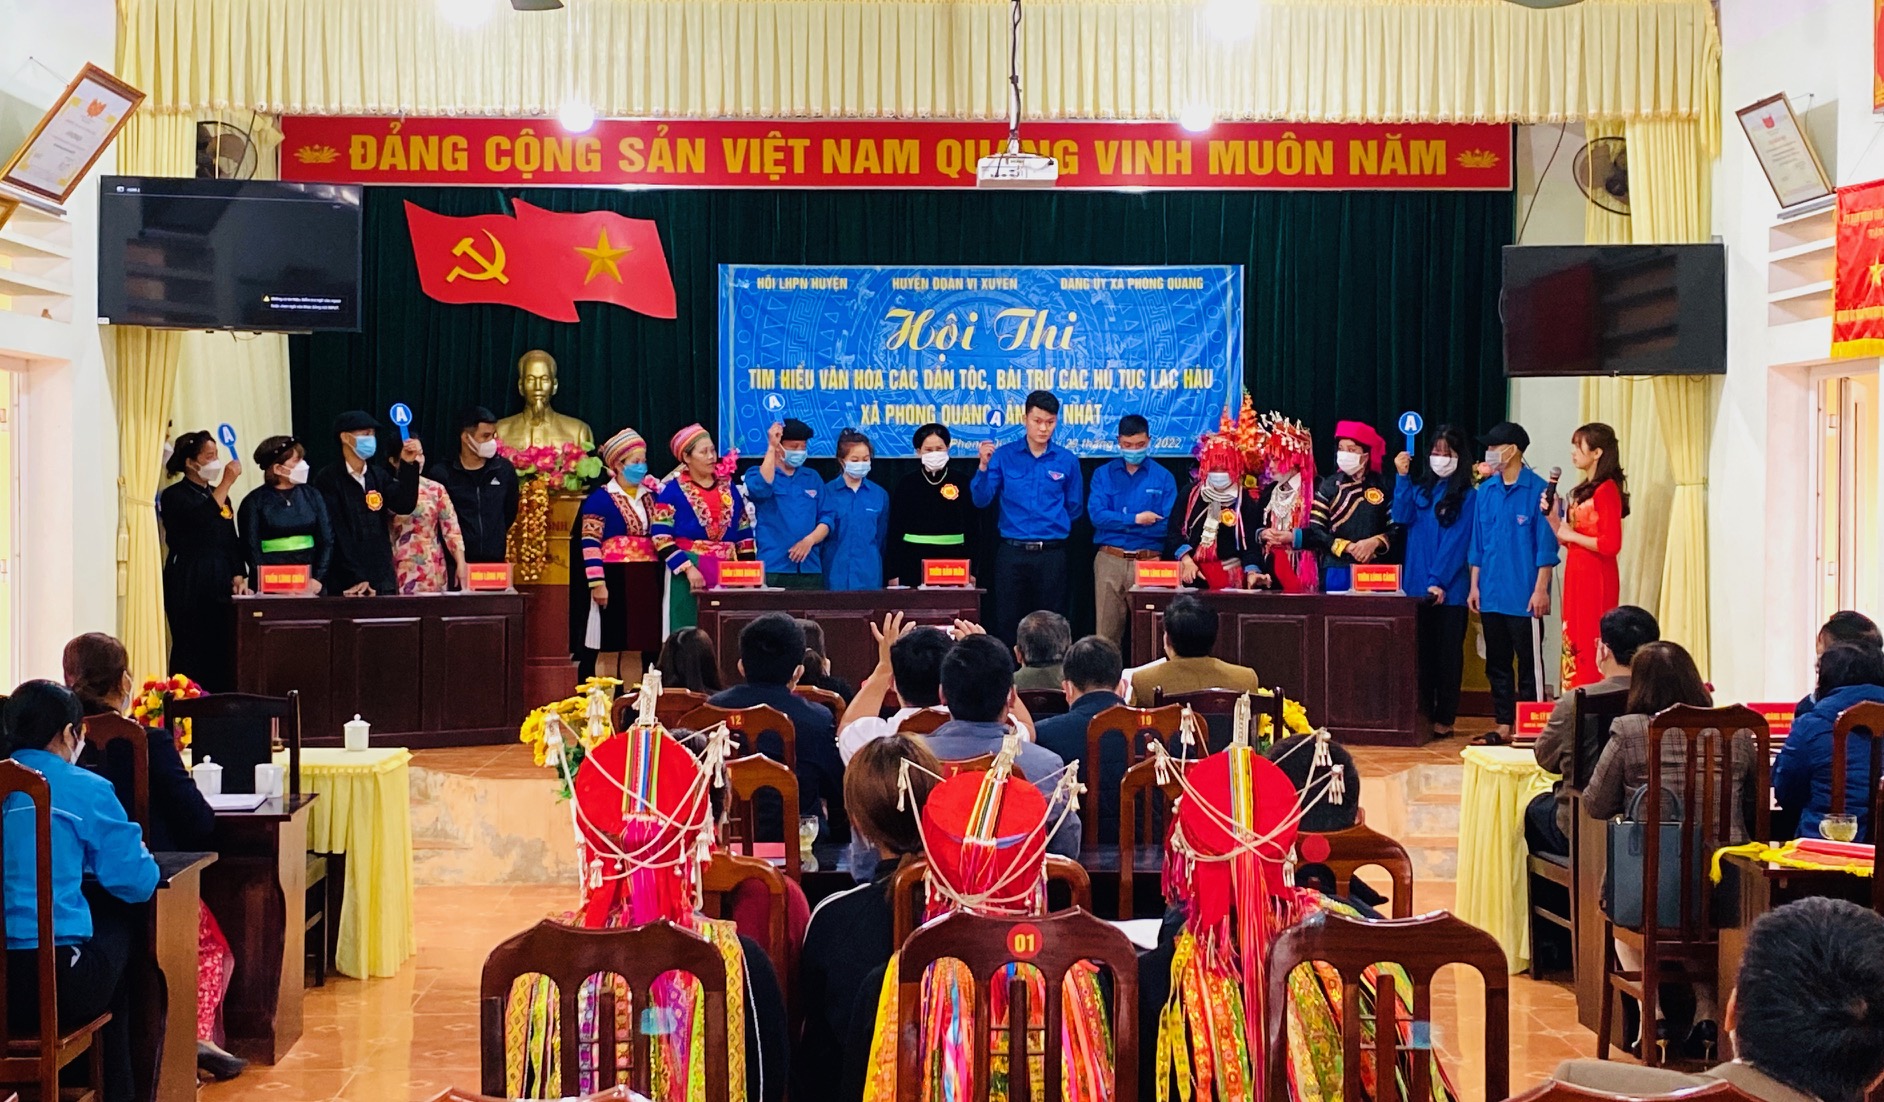 Hội thi tìm hiểu văn hóa các dân tộc bài trừ các hủ tục lạc hậu xã Phong Quang